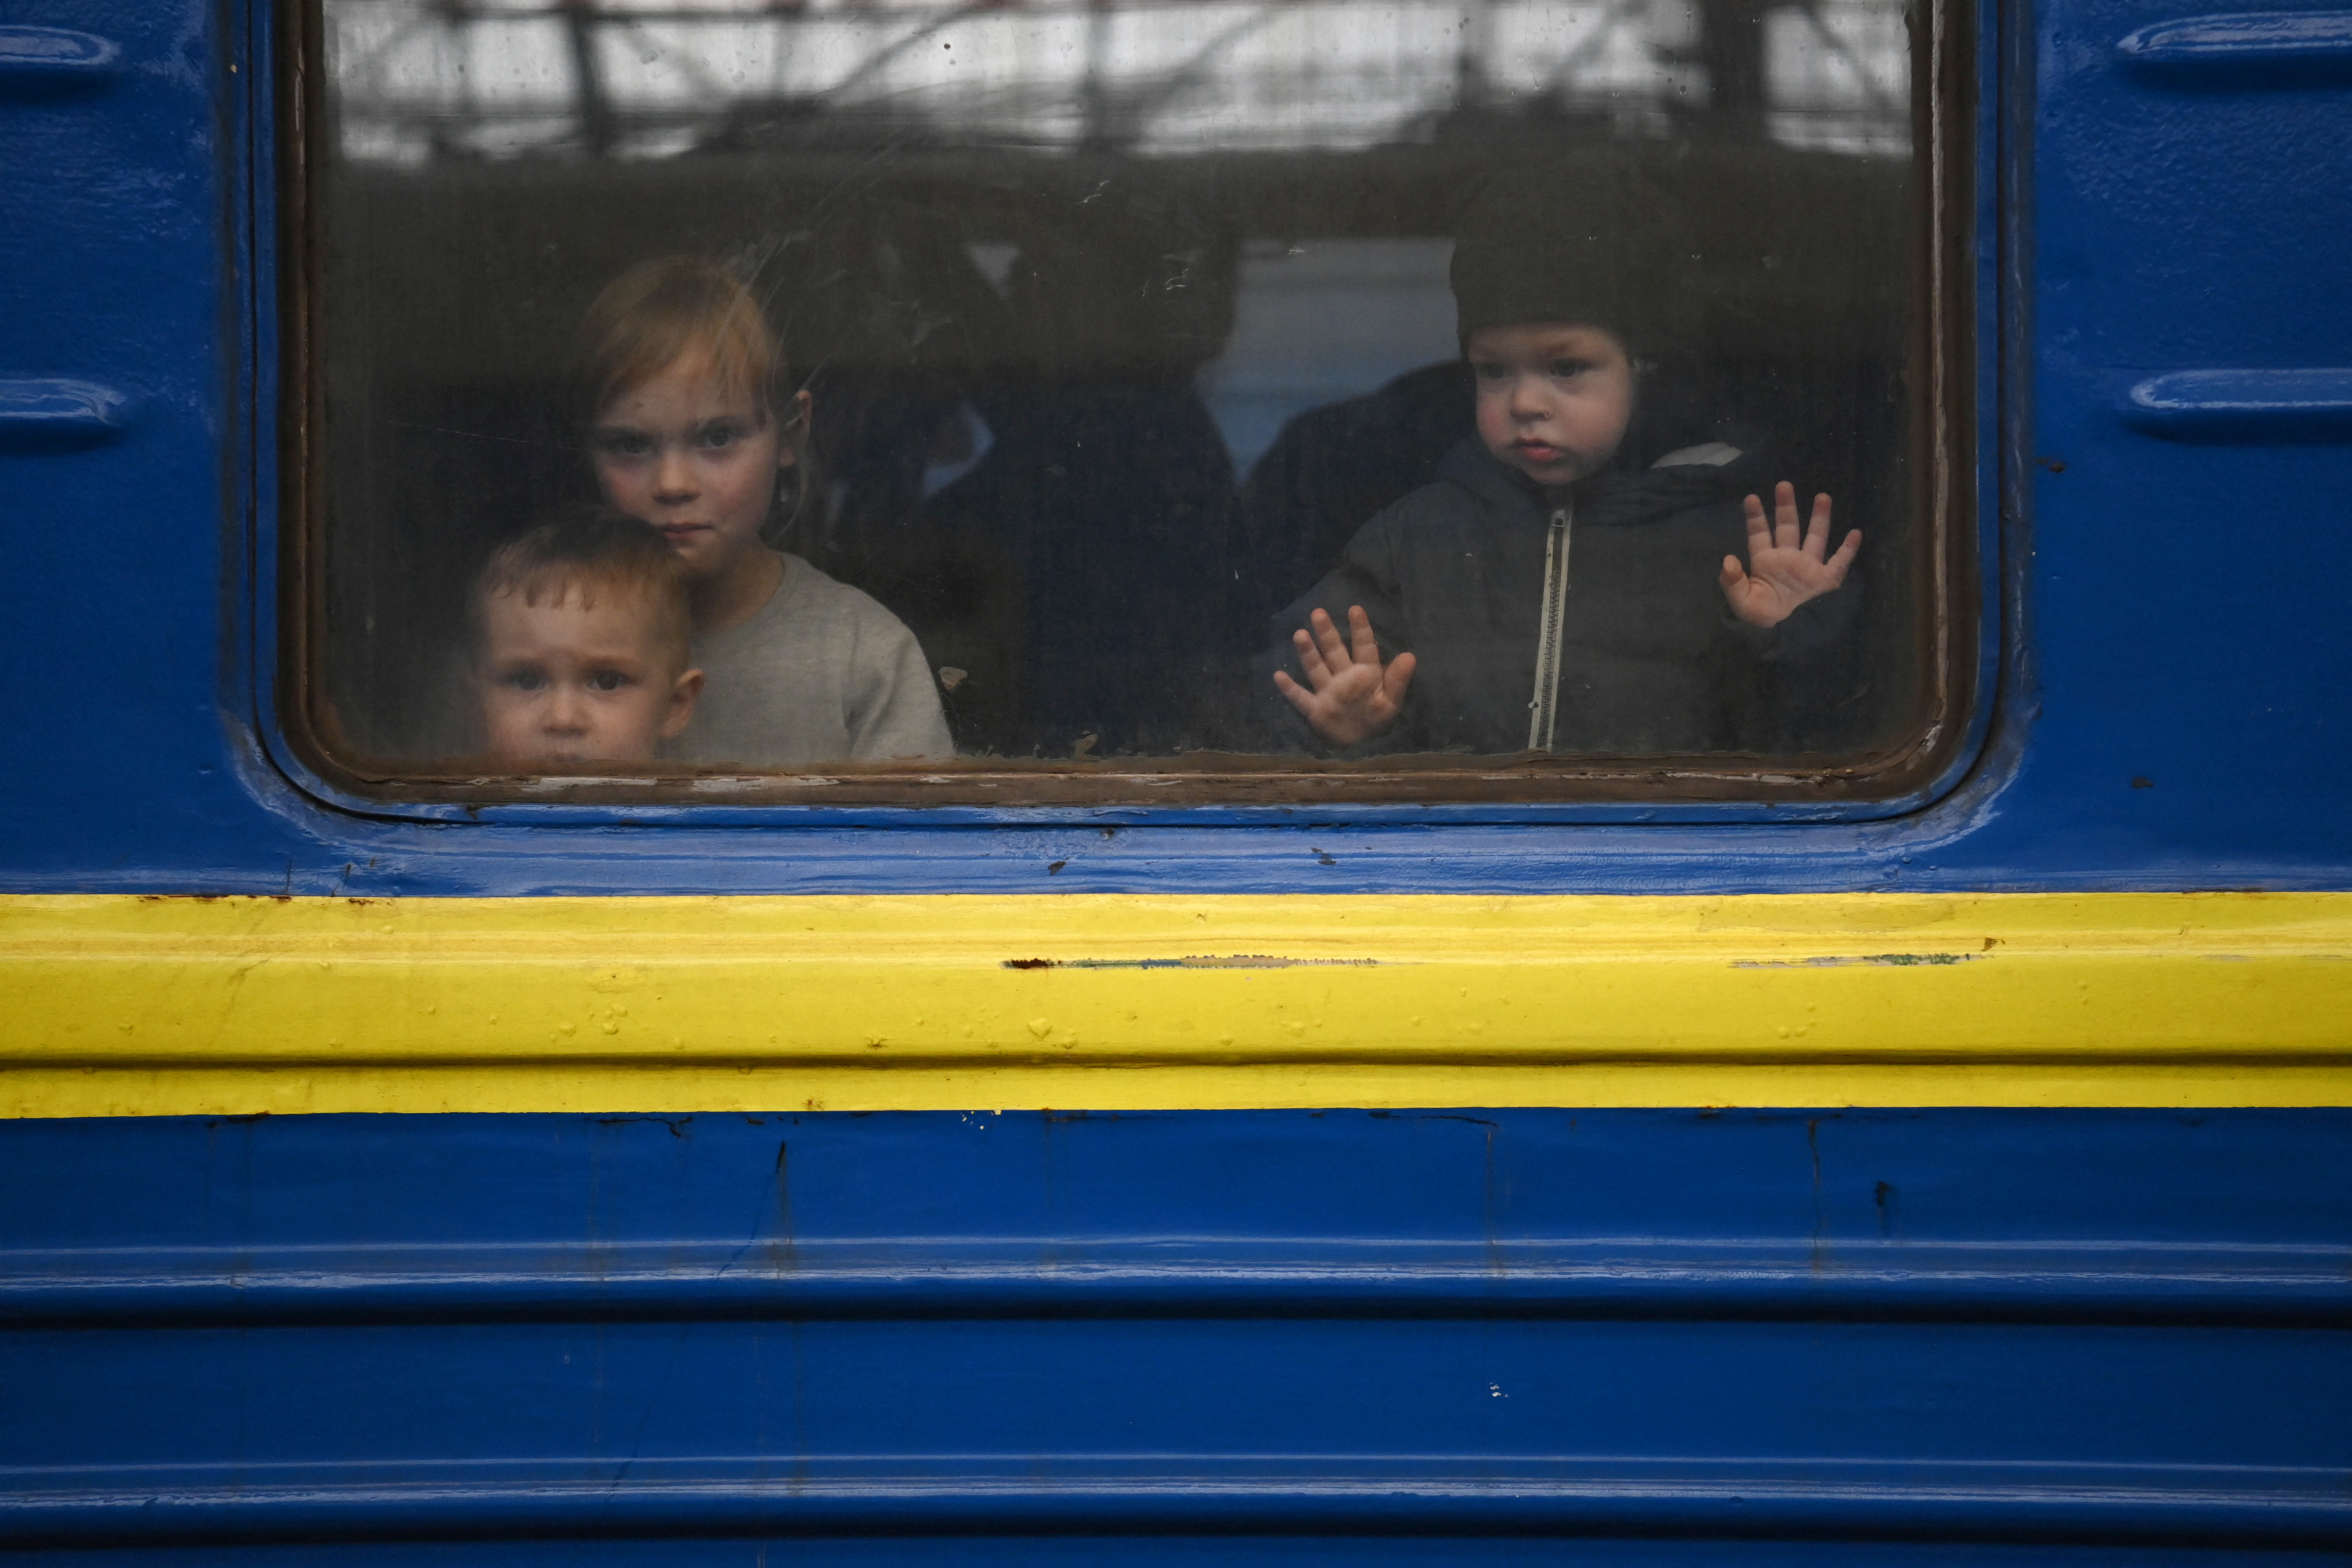 “Les cambian el nombre y les lavan el cerebro”, miles de niños ucranianos fueron deportados a Rusia a la fuerza